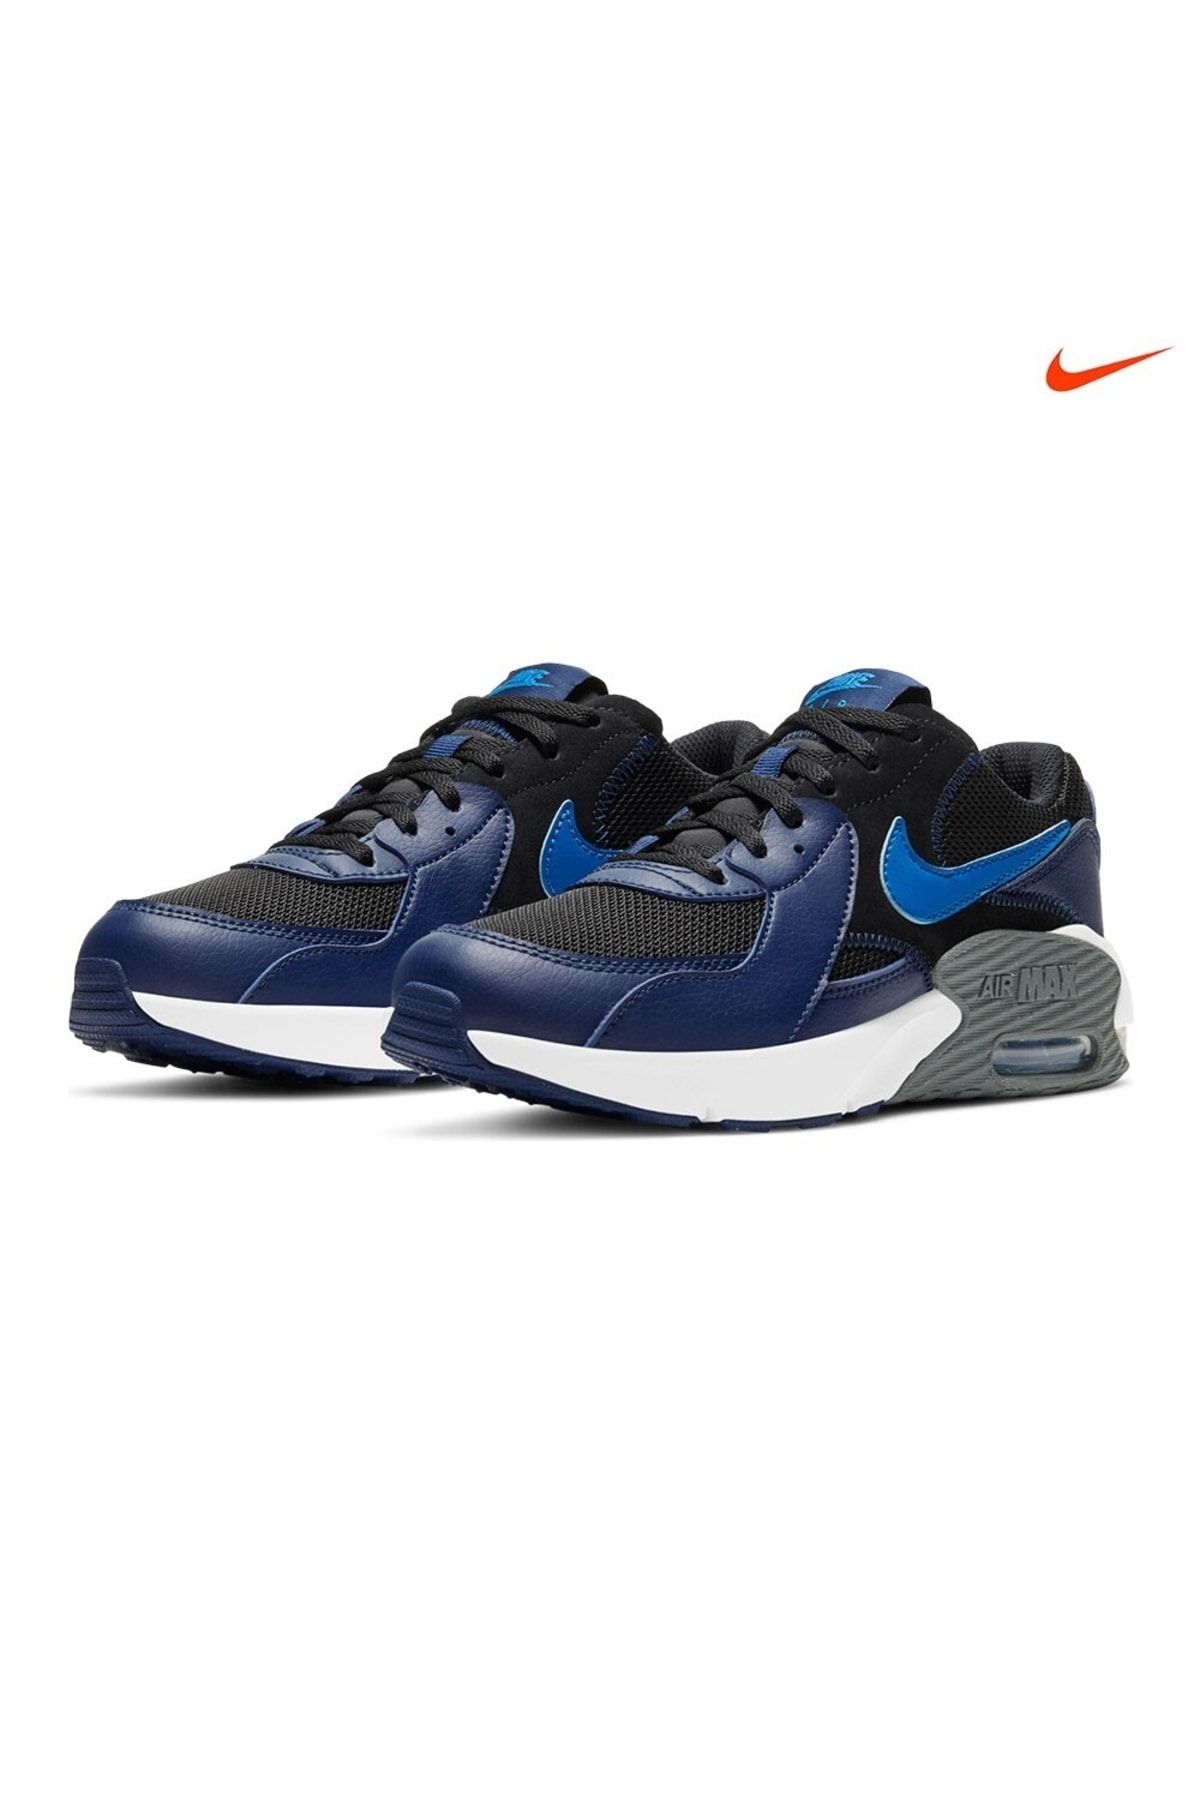 Nike Cd6894-009 Aır Max Excee Gs Kadın Günlük Spor Yürüyüş Koşu Ayakkab